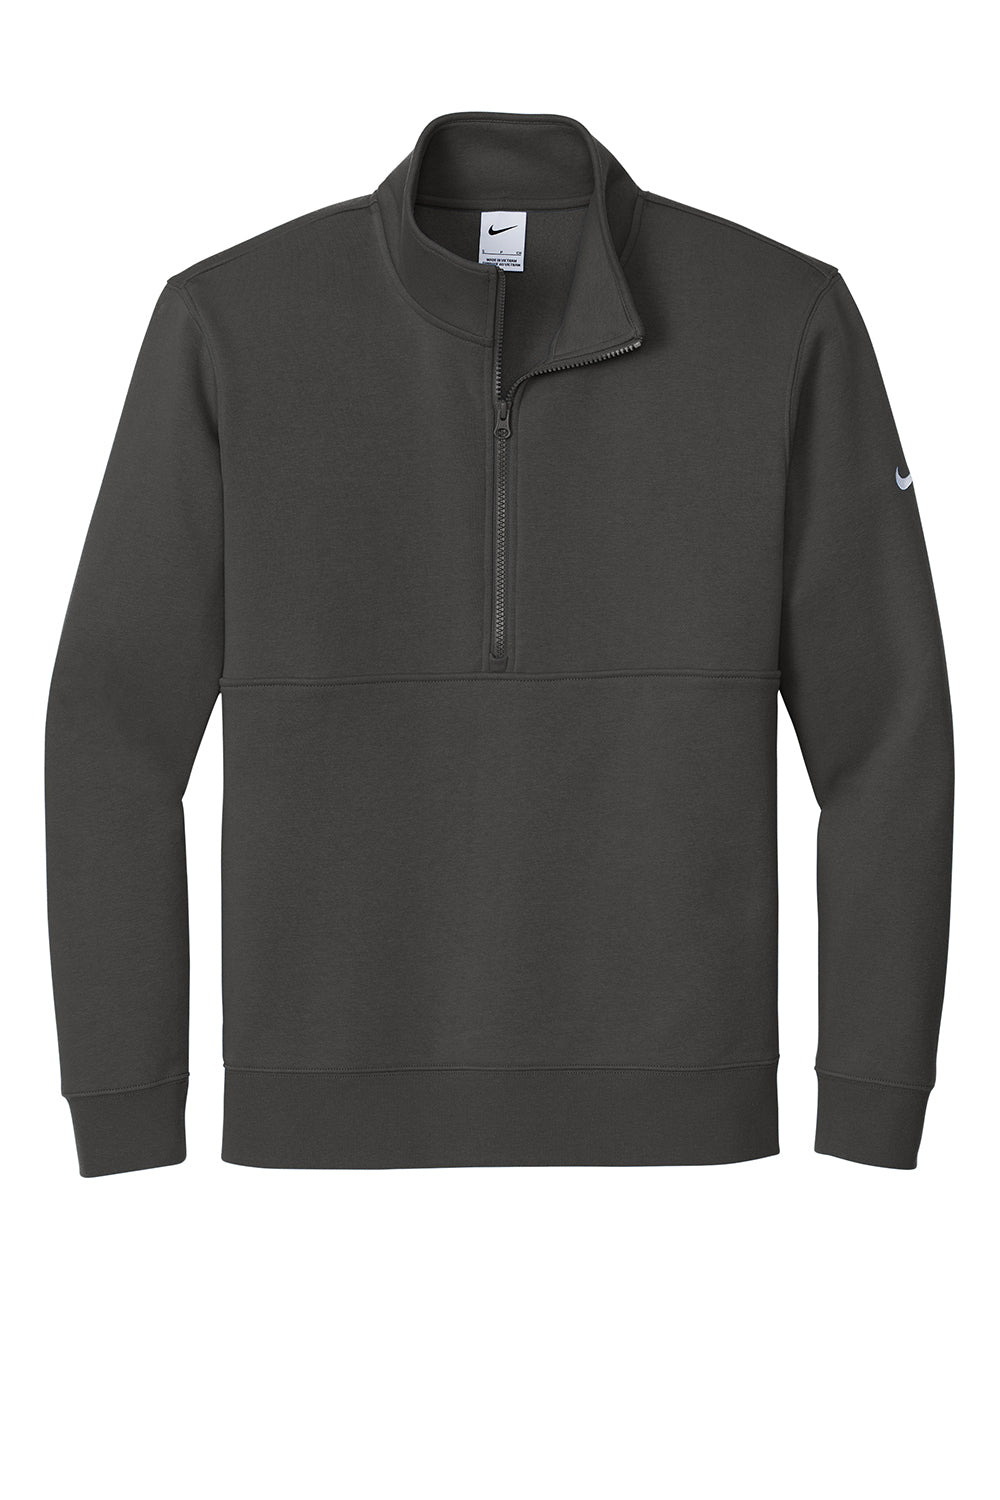 Nike NKDX6718 Mens Club Fleece 1/4 Zip Sweatshirt Anthracite Grey Flat Front